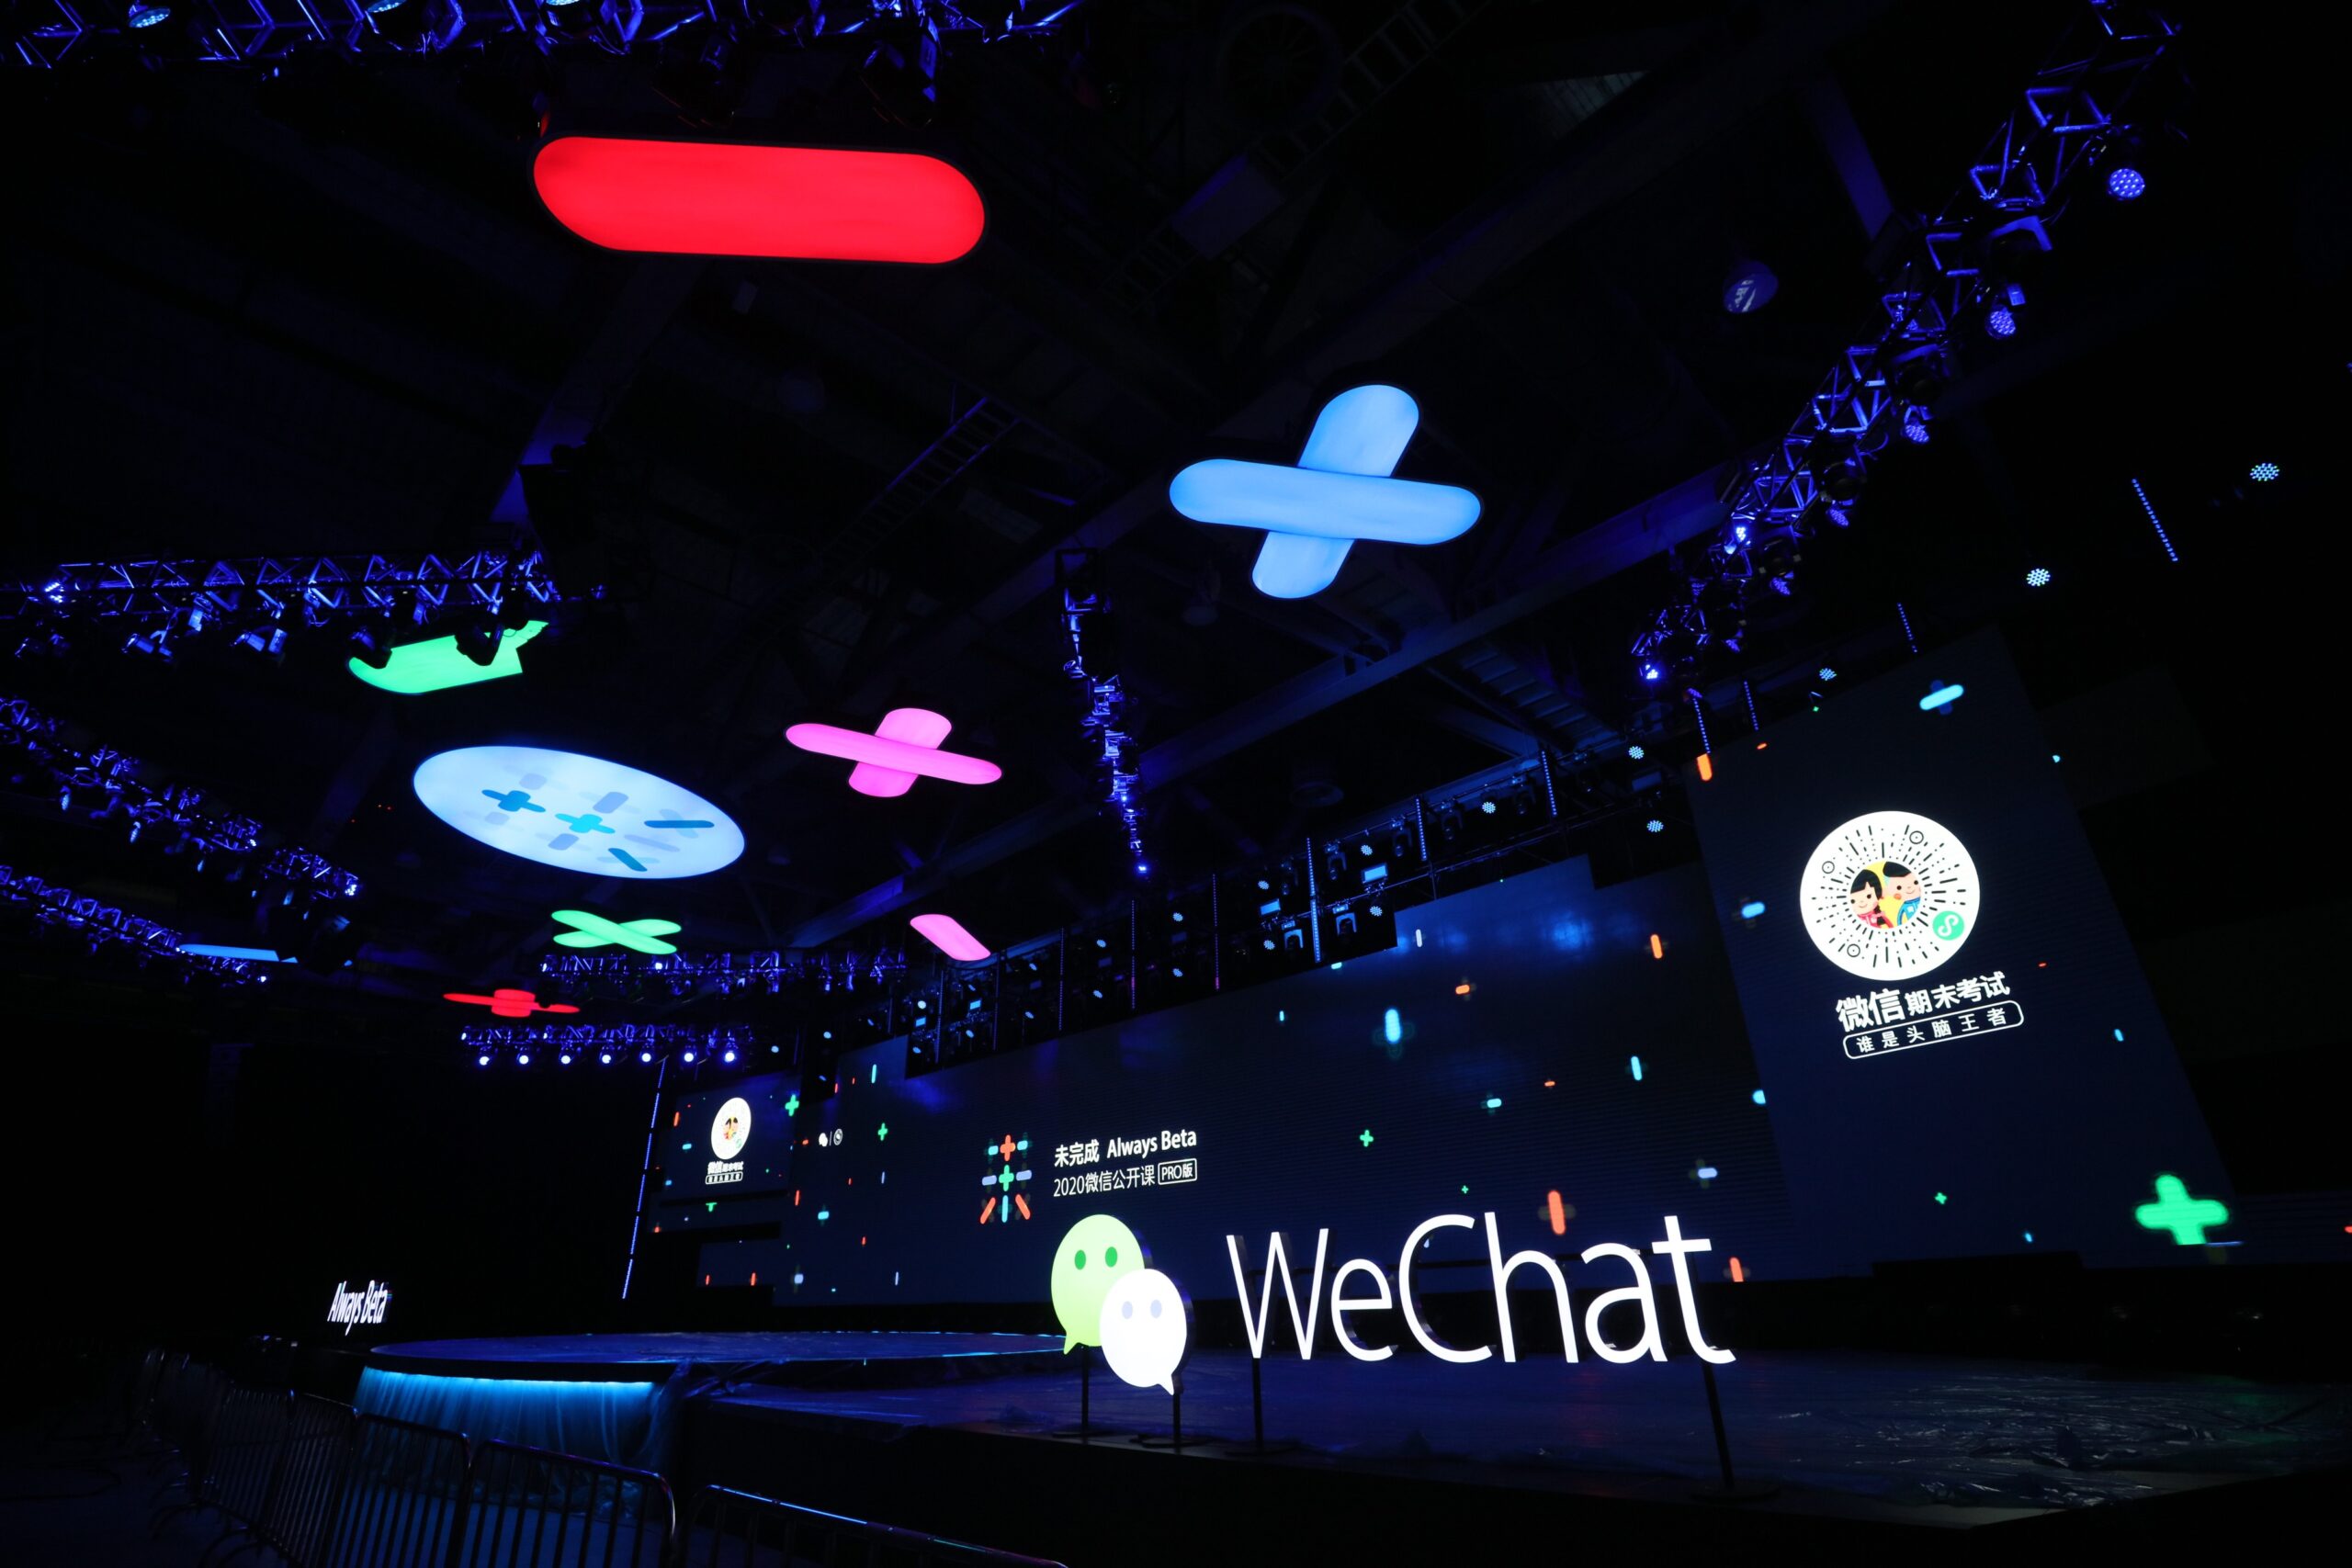 The 2020 WeChat Open Class PRO event in Guangzhou scaled | Tencent | วีแชตฉลองความสำเร็จ ‘มินิโปรแกรม’ ครบรอบ 3 ปี เผยยอดใช้จ่ายทะลุ 3.6 ล้านล้านบาท